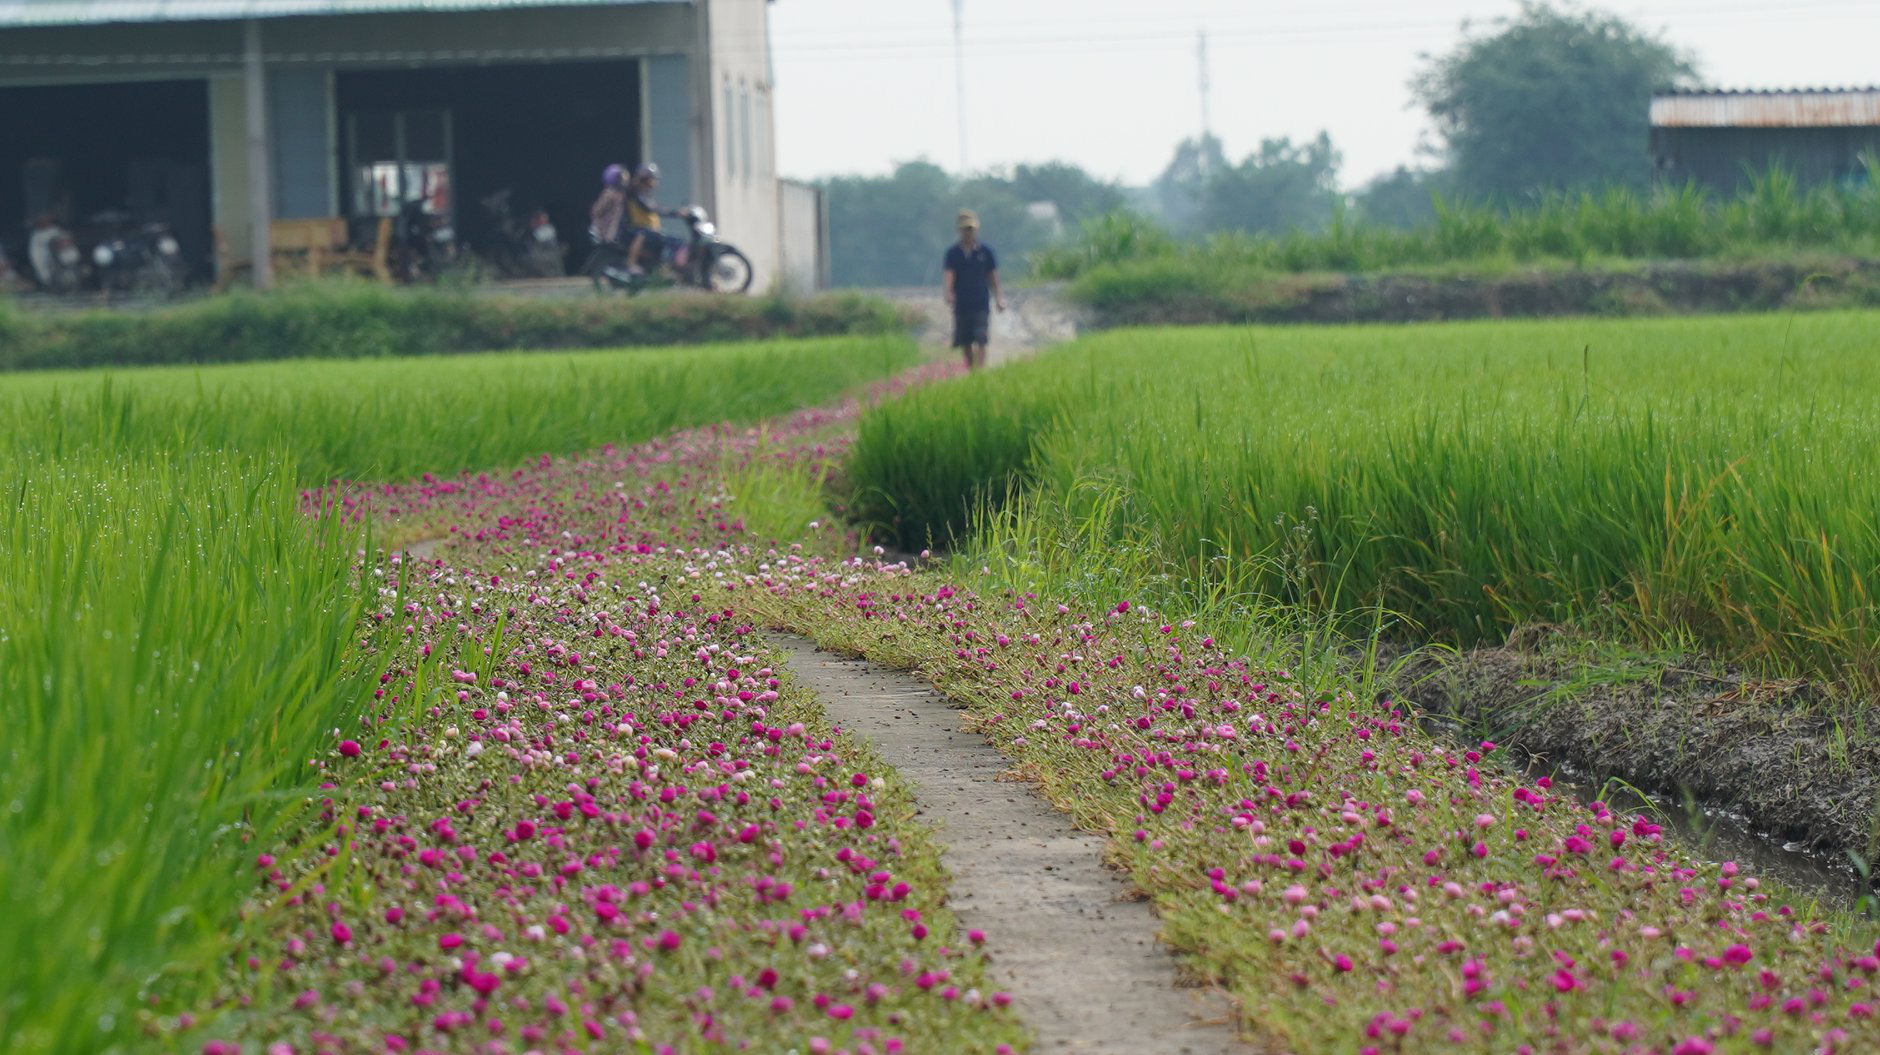 Mê mẩn con đường hoa mười giờ đẹp và lãng mạn nhất Việt Nam - Ảnh 6.